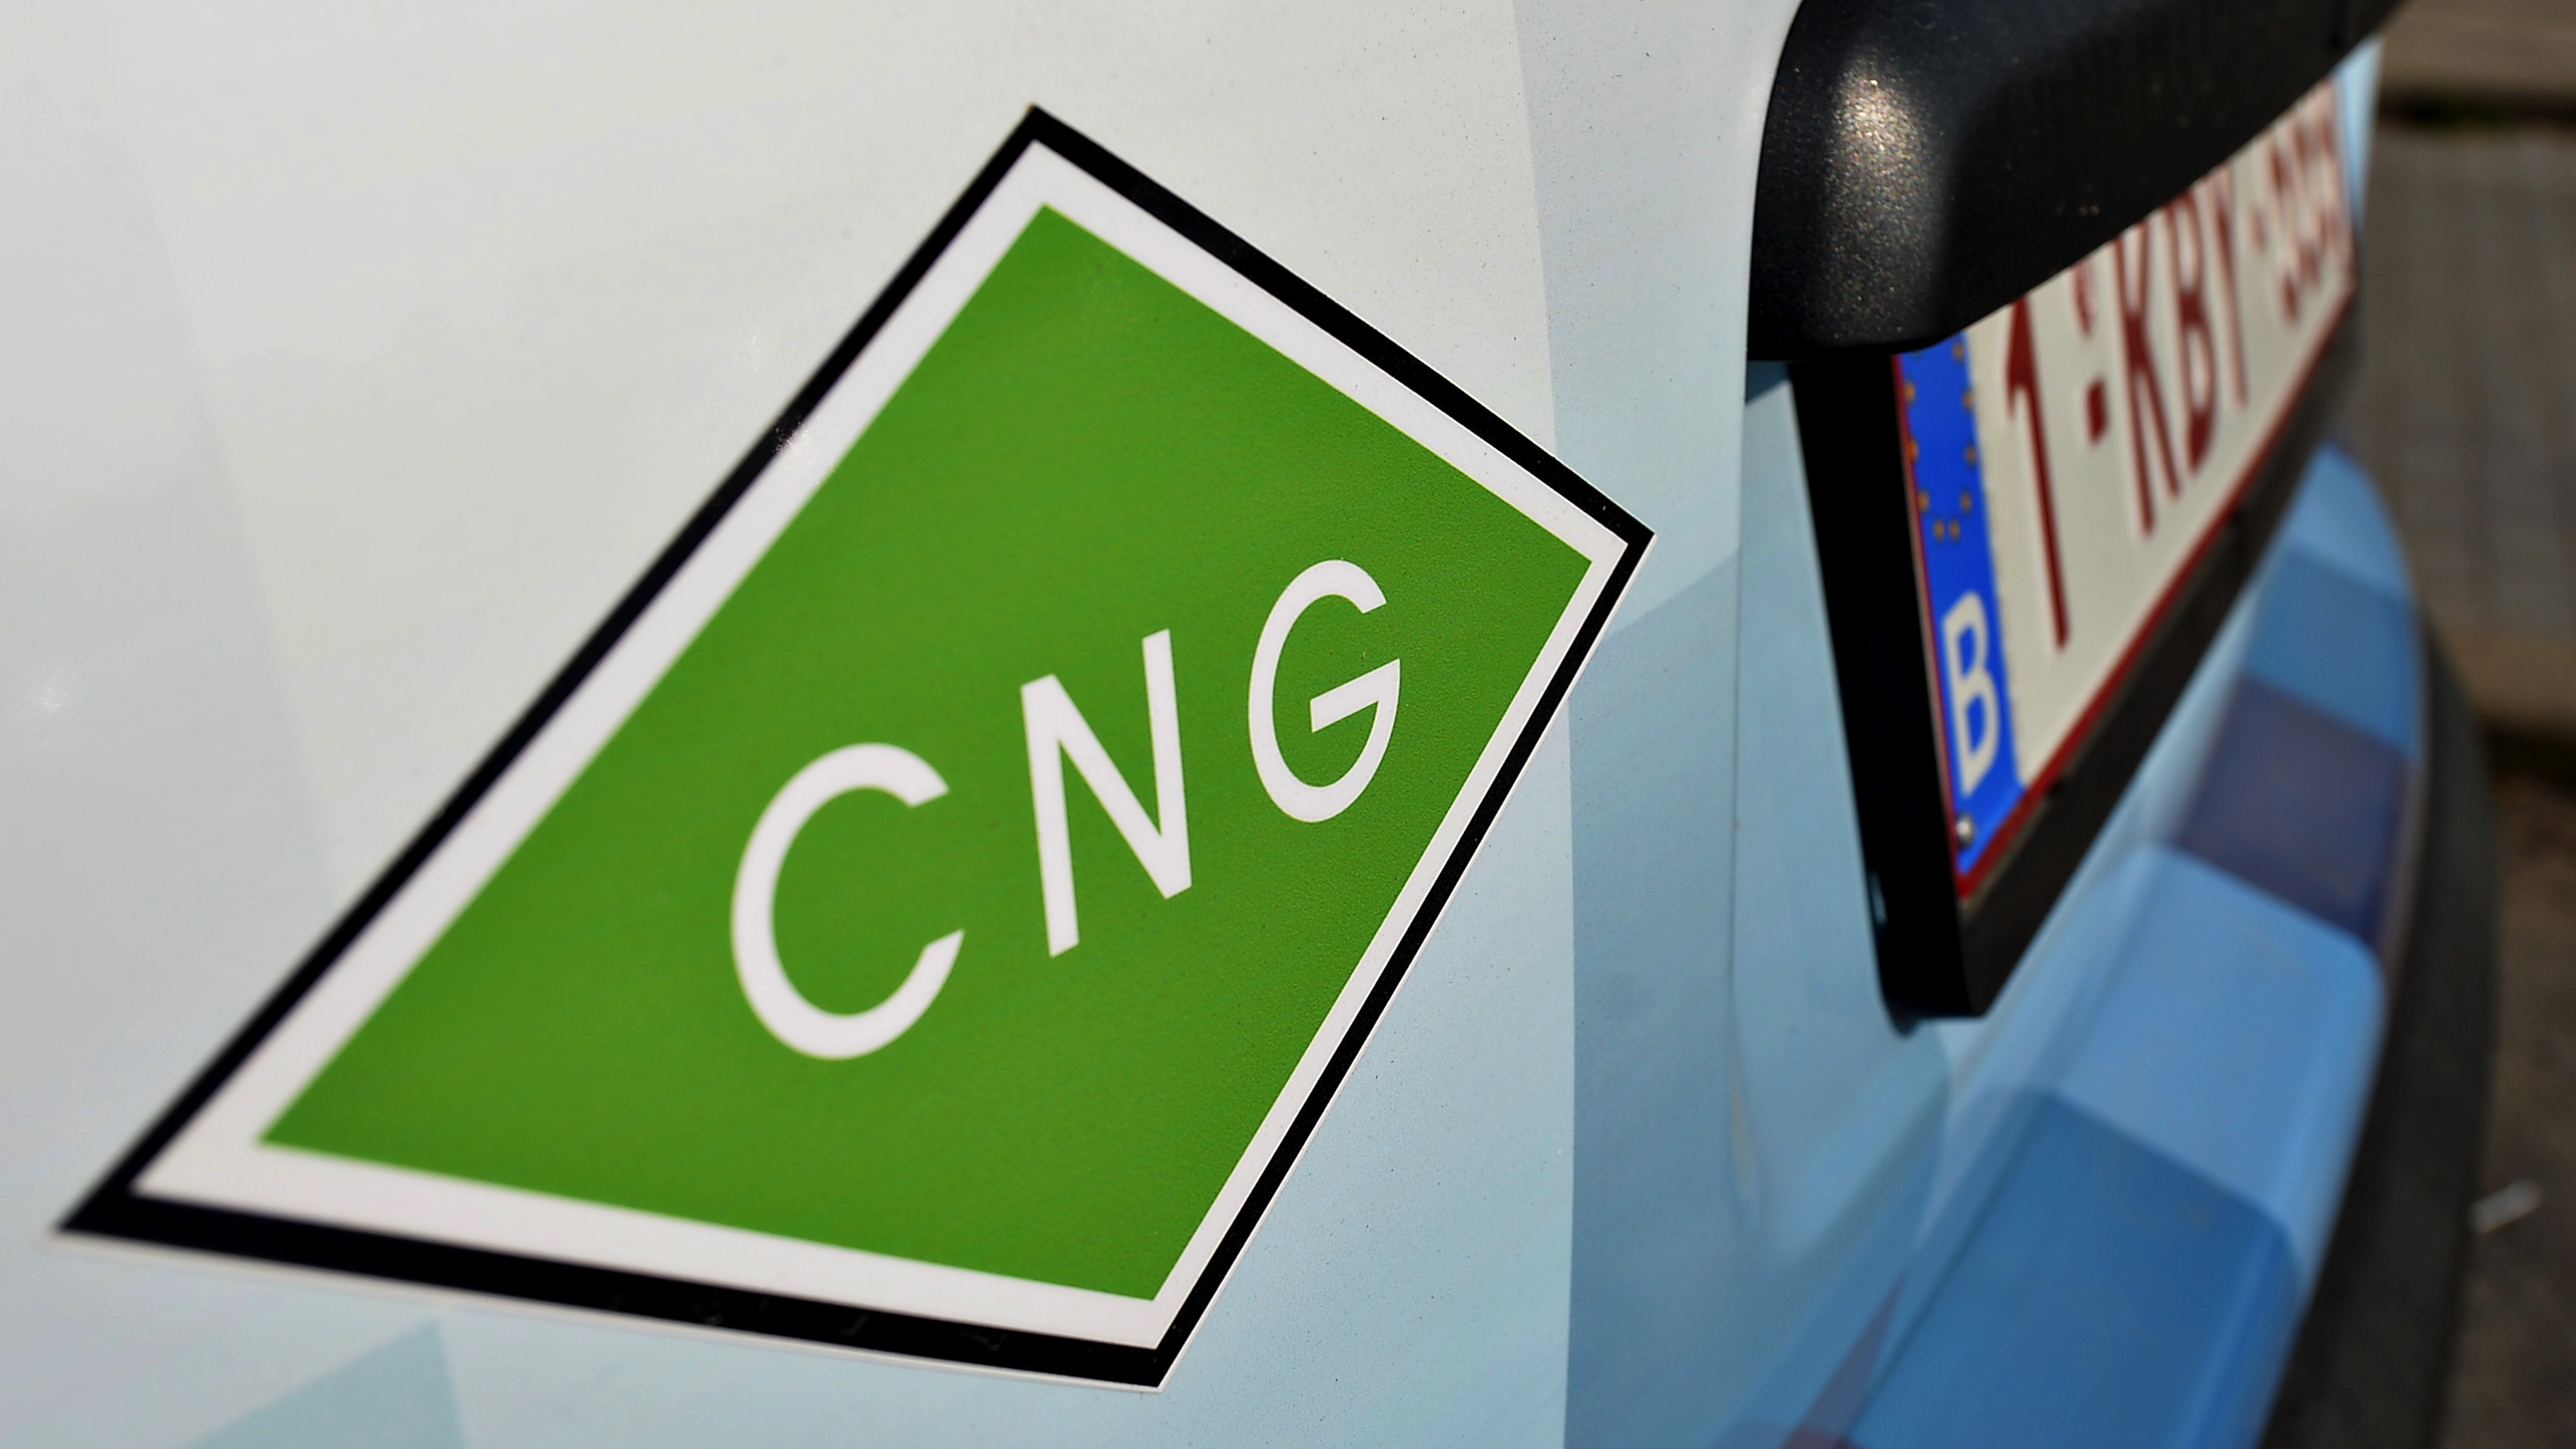 Le réseau de stations CNG appelé à se développer fortement à travers la Wallonie